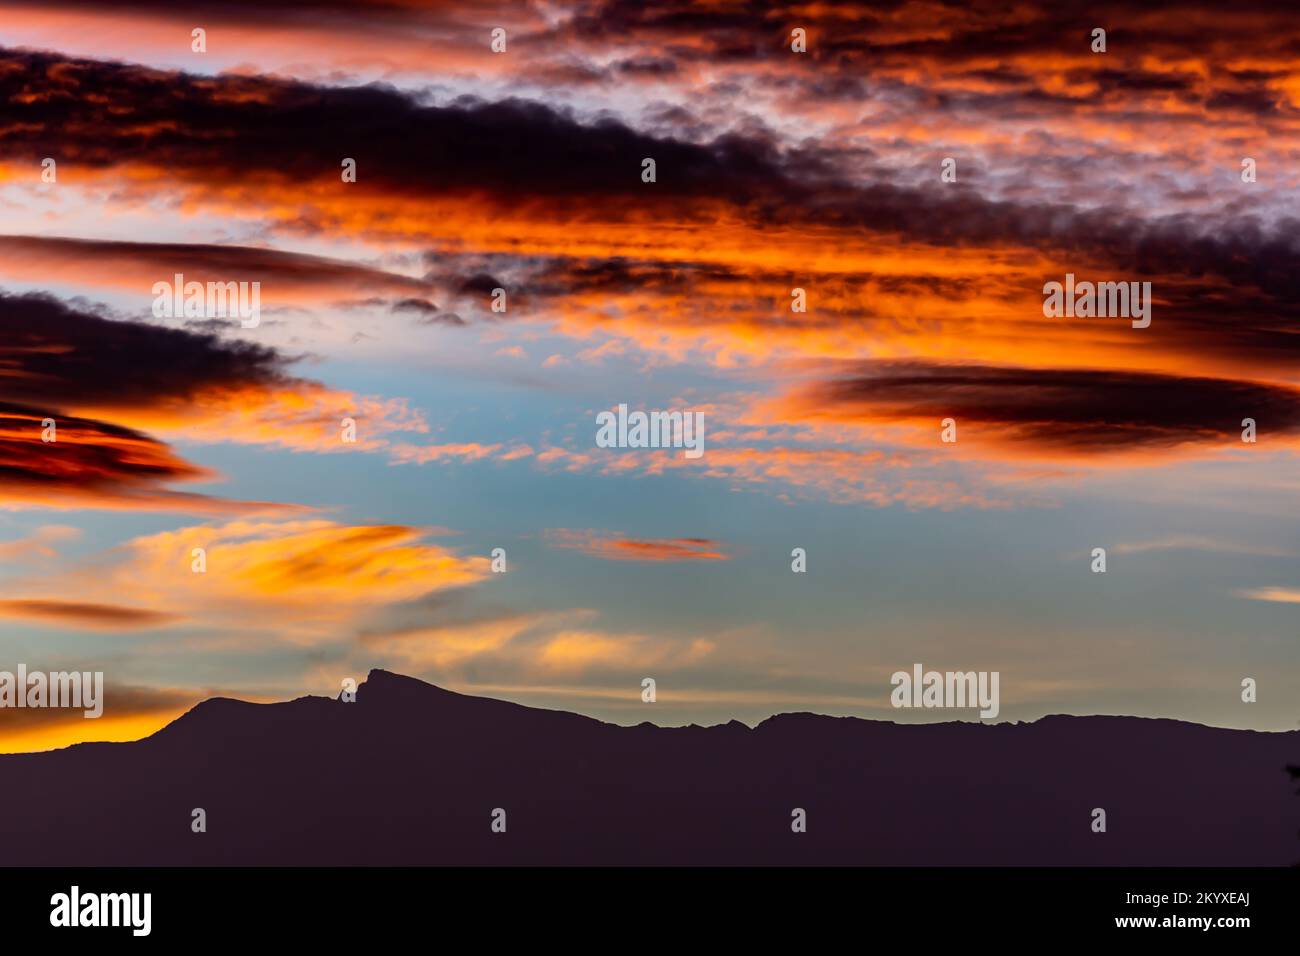 Des nuages lenticulaires spectaculaires à l'aube au-dessus de la silhouette des sommets de la Sierra Nevada (Grenade, Espagne) en automne Banque D'Images